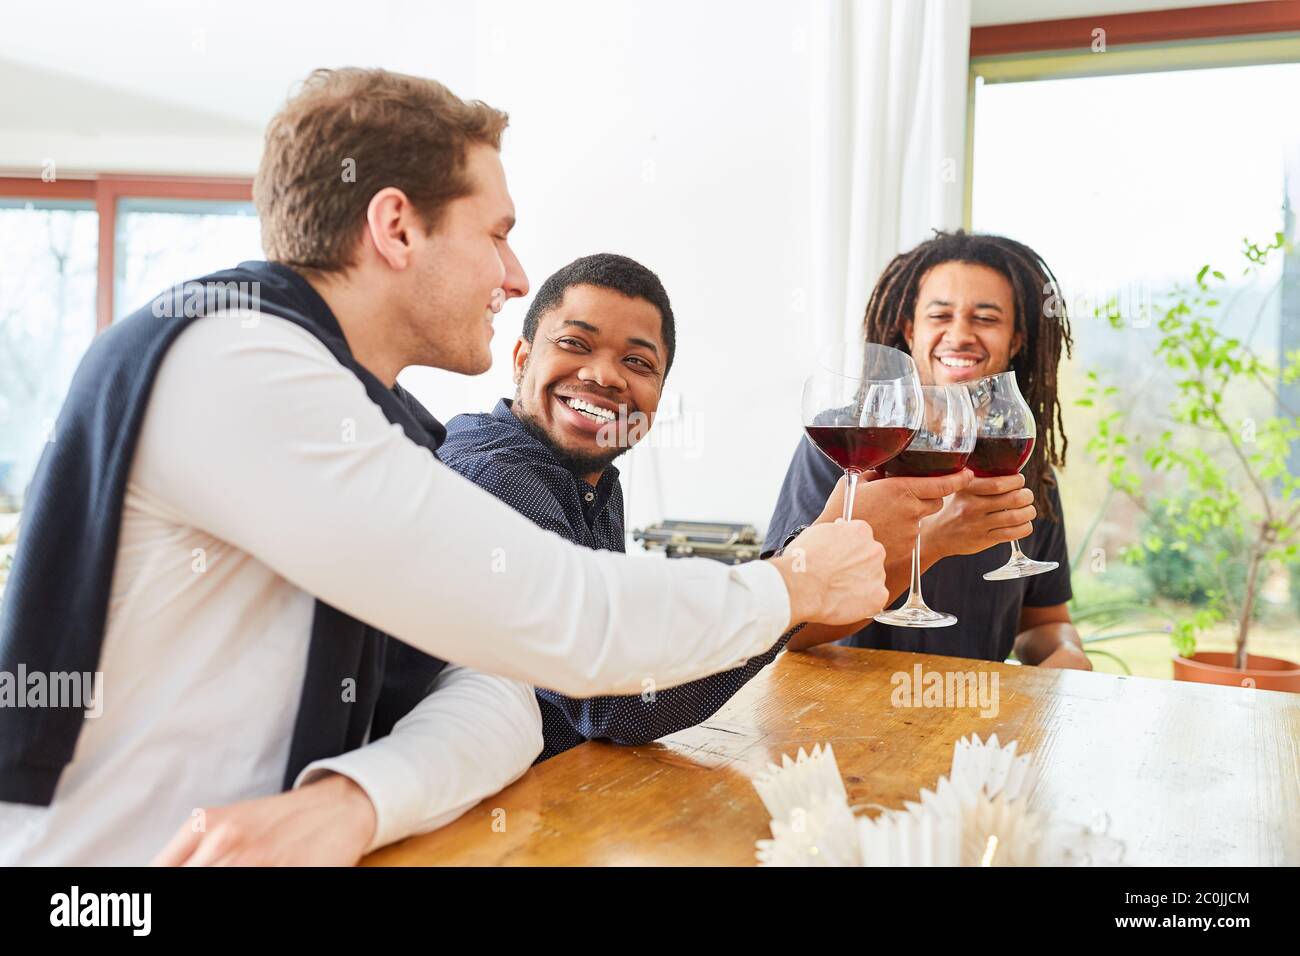 Gruppo di uomini come amici bere un bicchiere di vino rosso insieme e ridere insieme Foto Stock